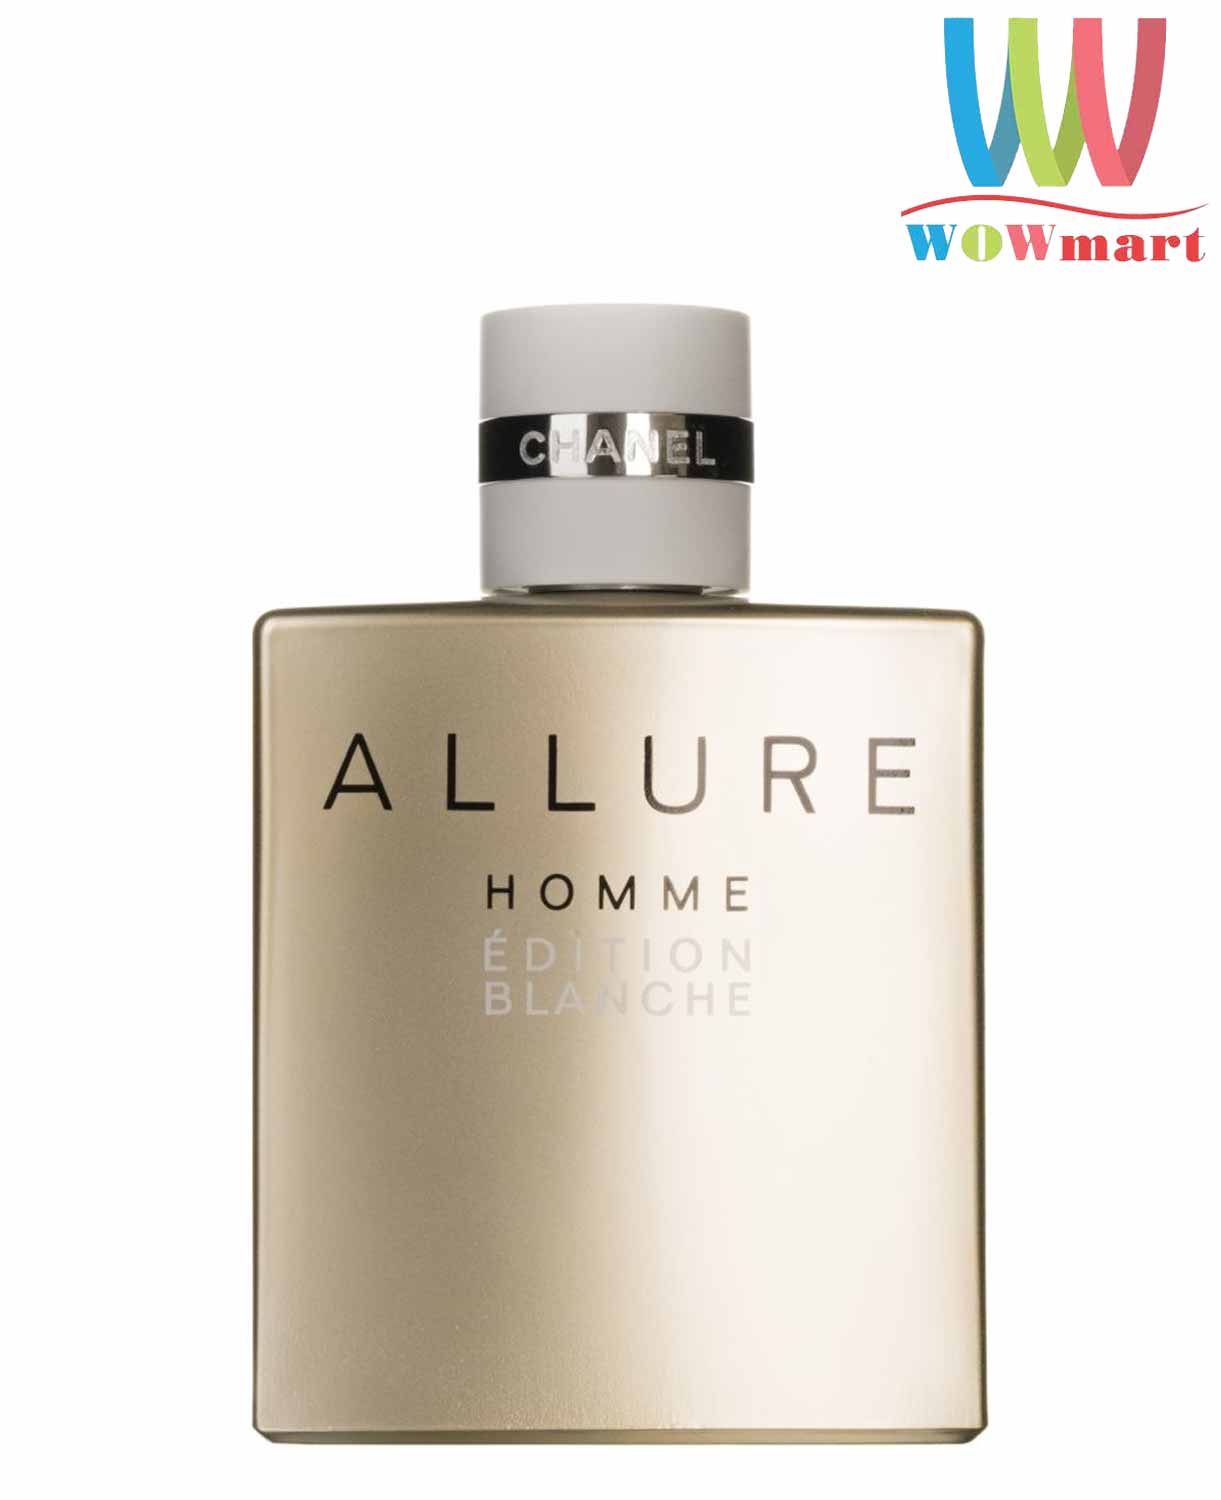 Nươc hoa nam Chanel Allure Homme Edition Blanche EDP 100ml – Wowmart VN |  100% hàng ngoại nhập